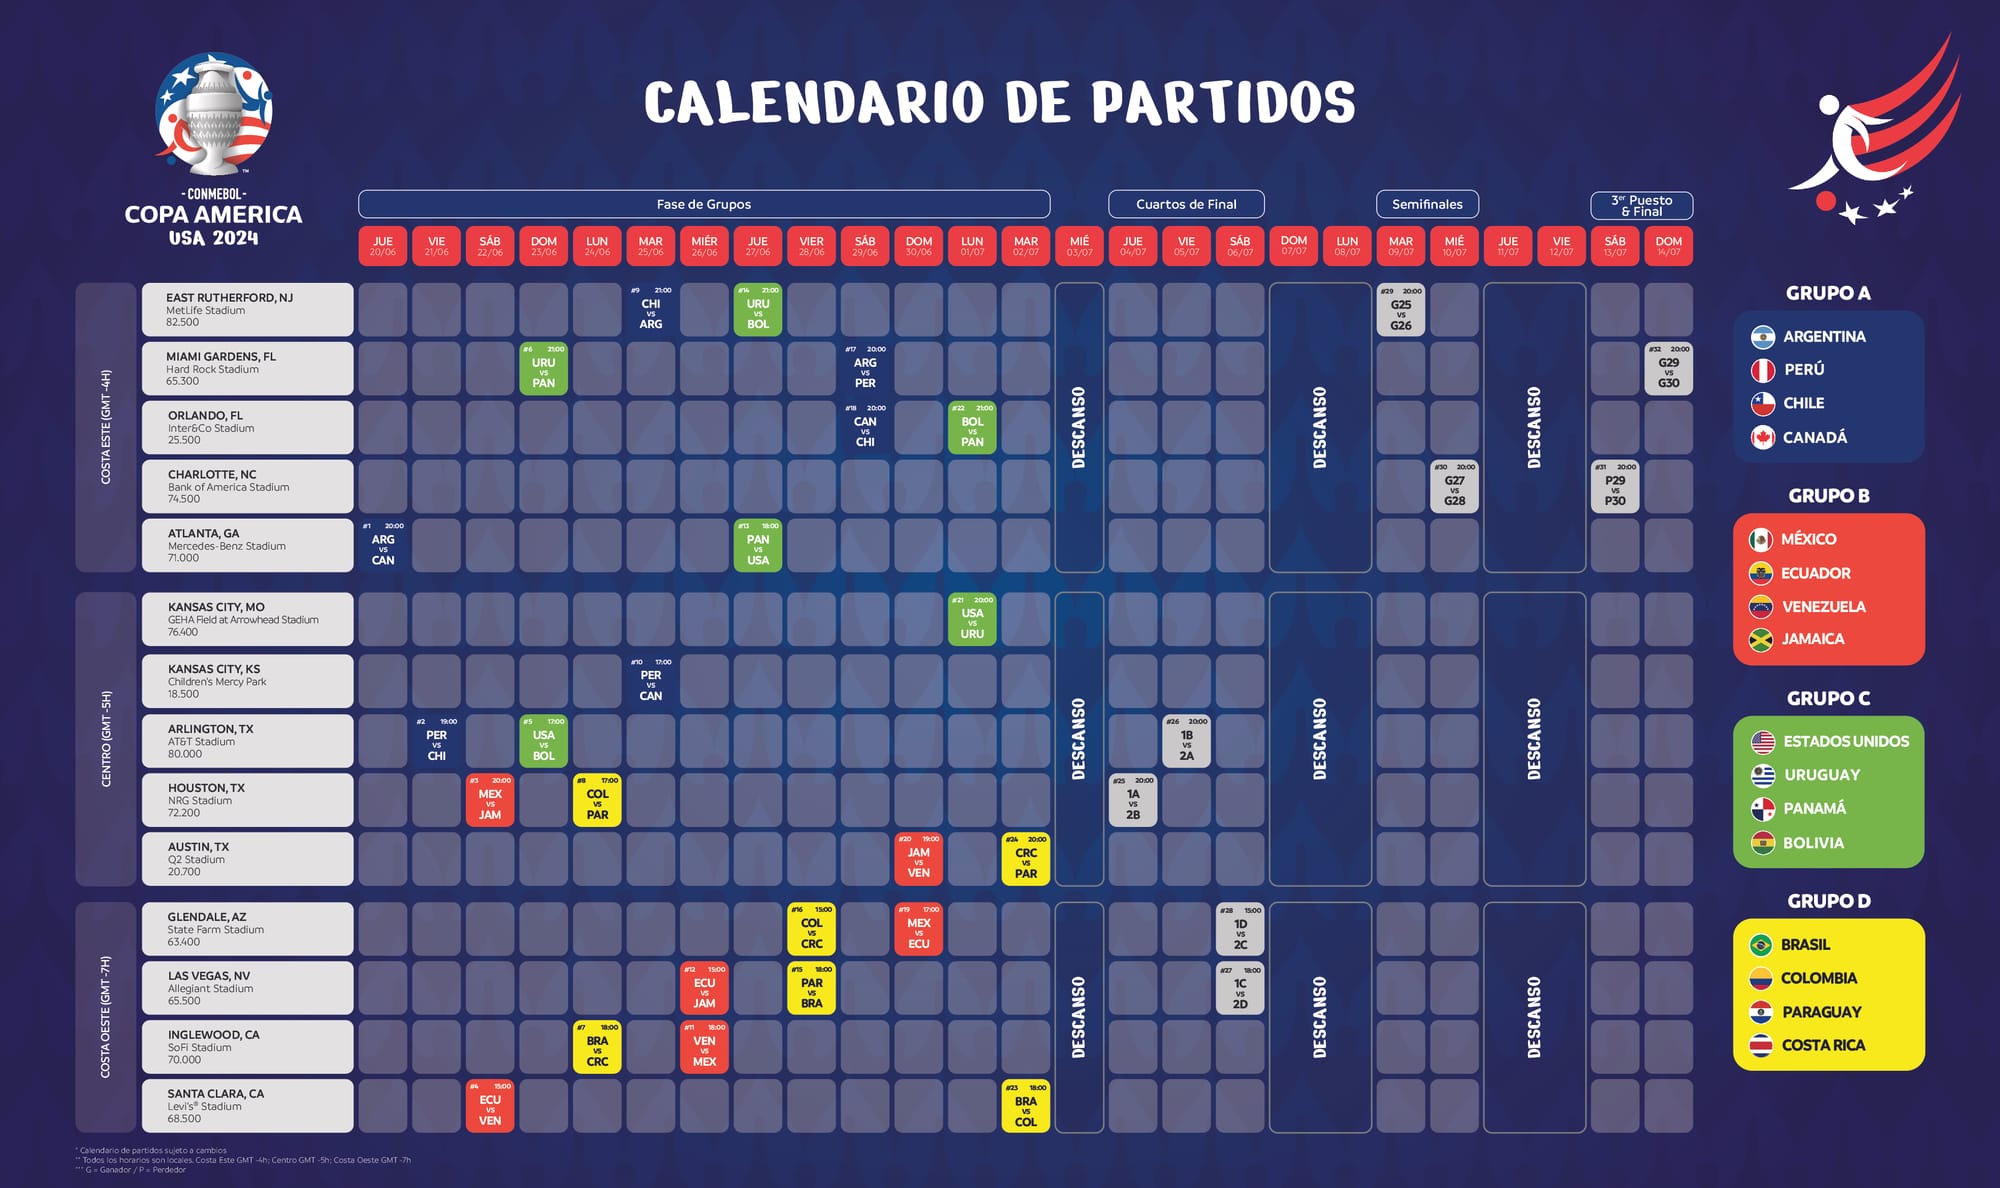 Copa América 2024 Calendario de Partidos